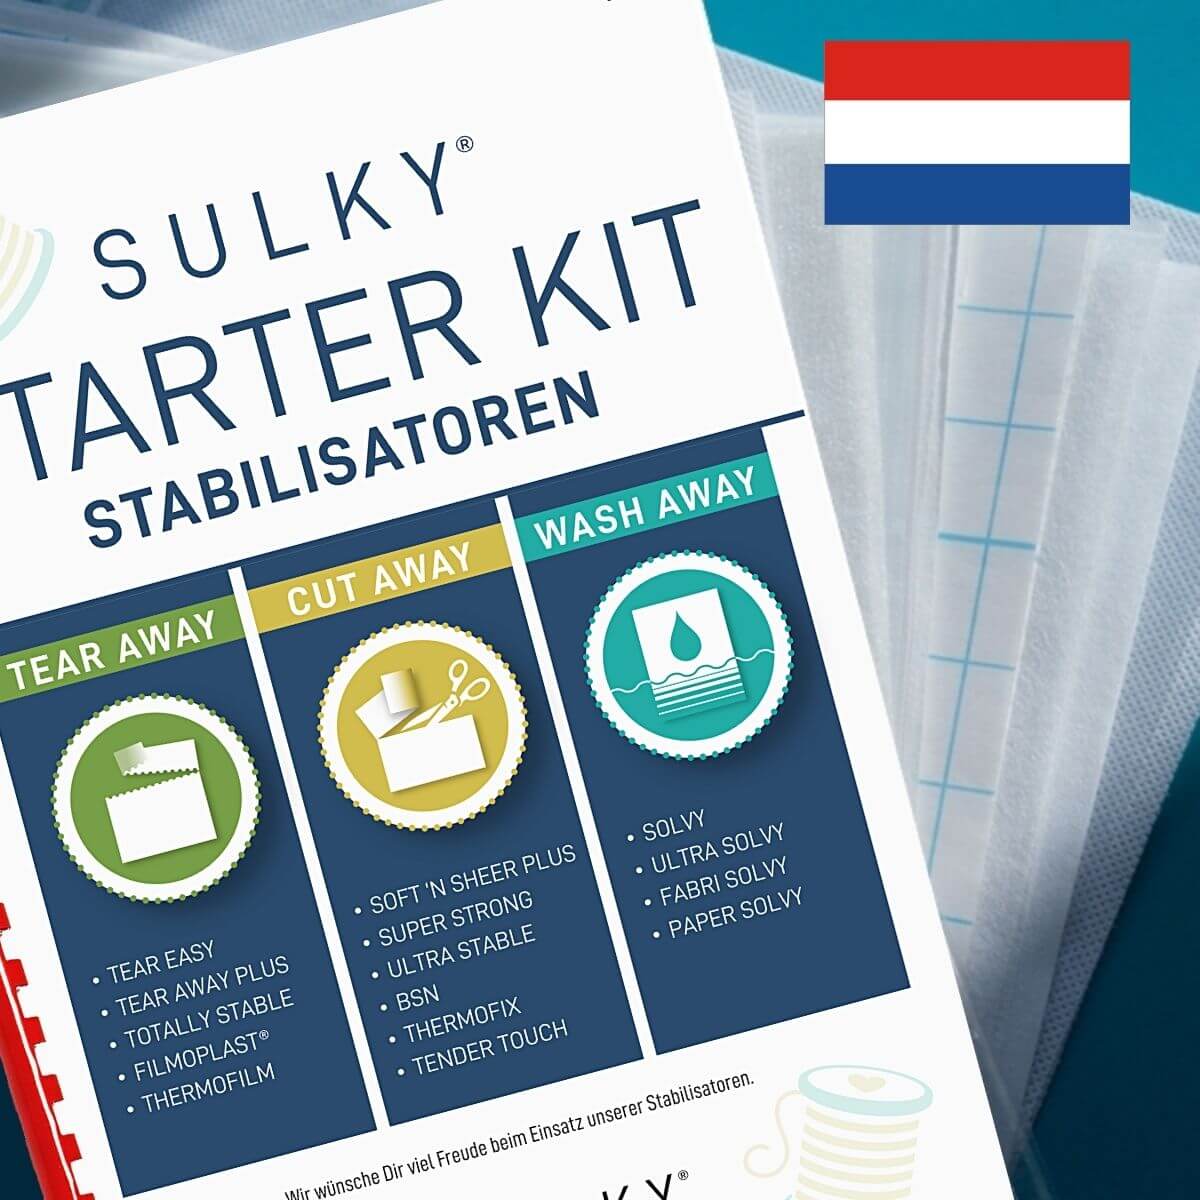 SULKY STARTER KIT - Stabilisatoren (in Dutch)
- Package contains 15 Sampler